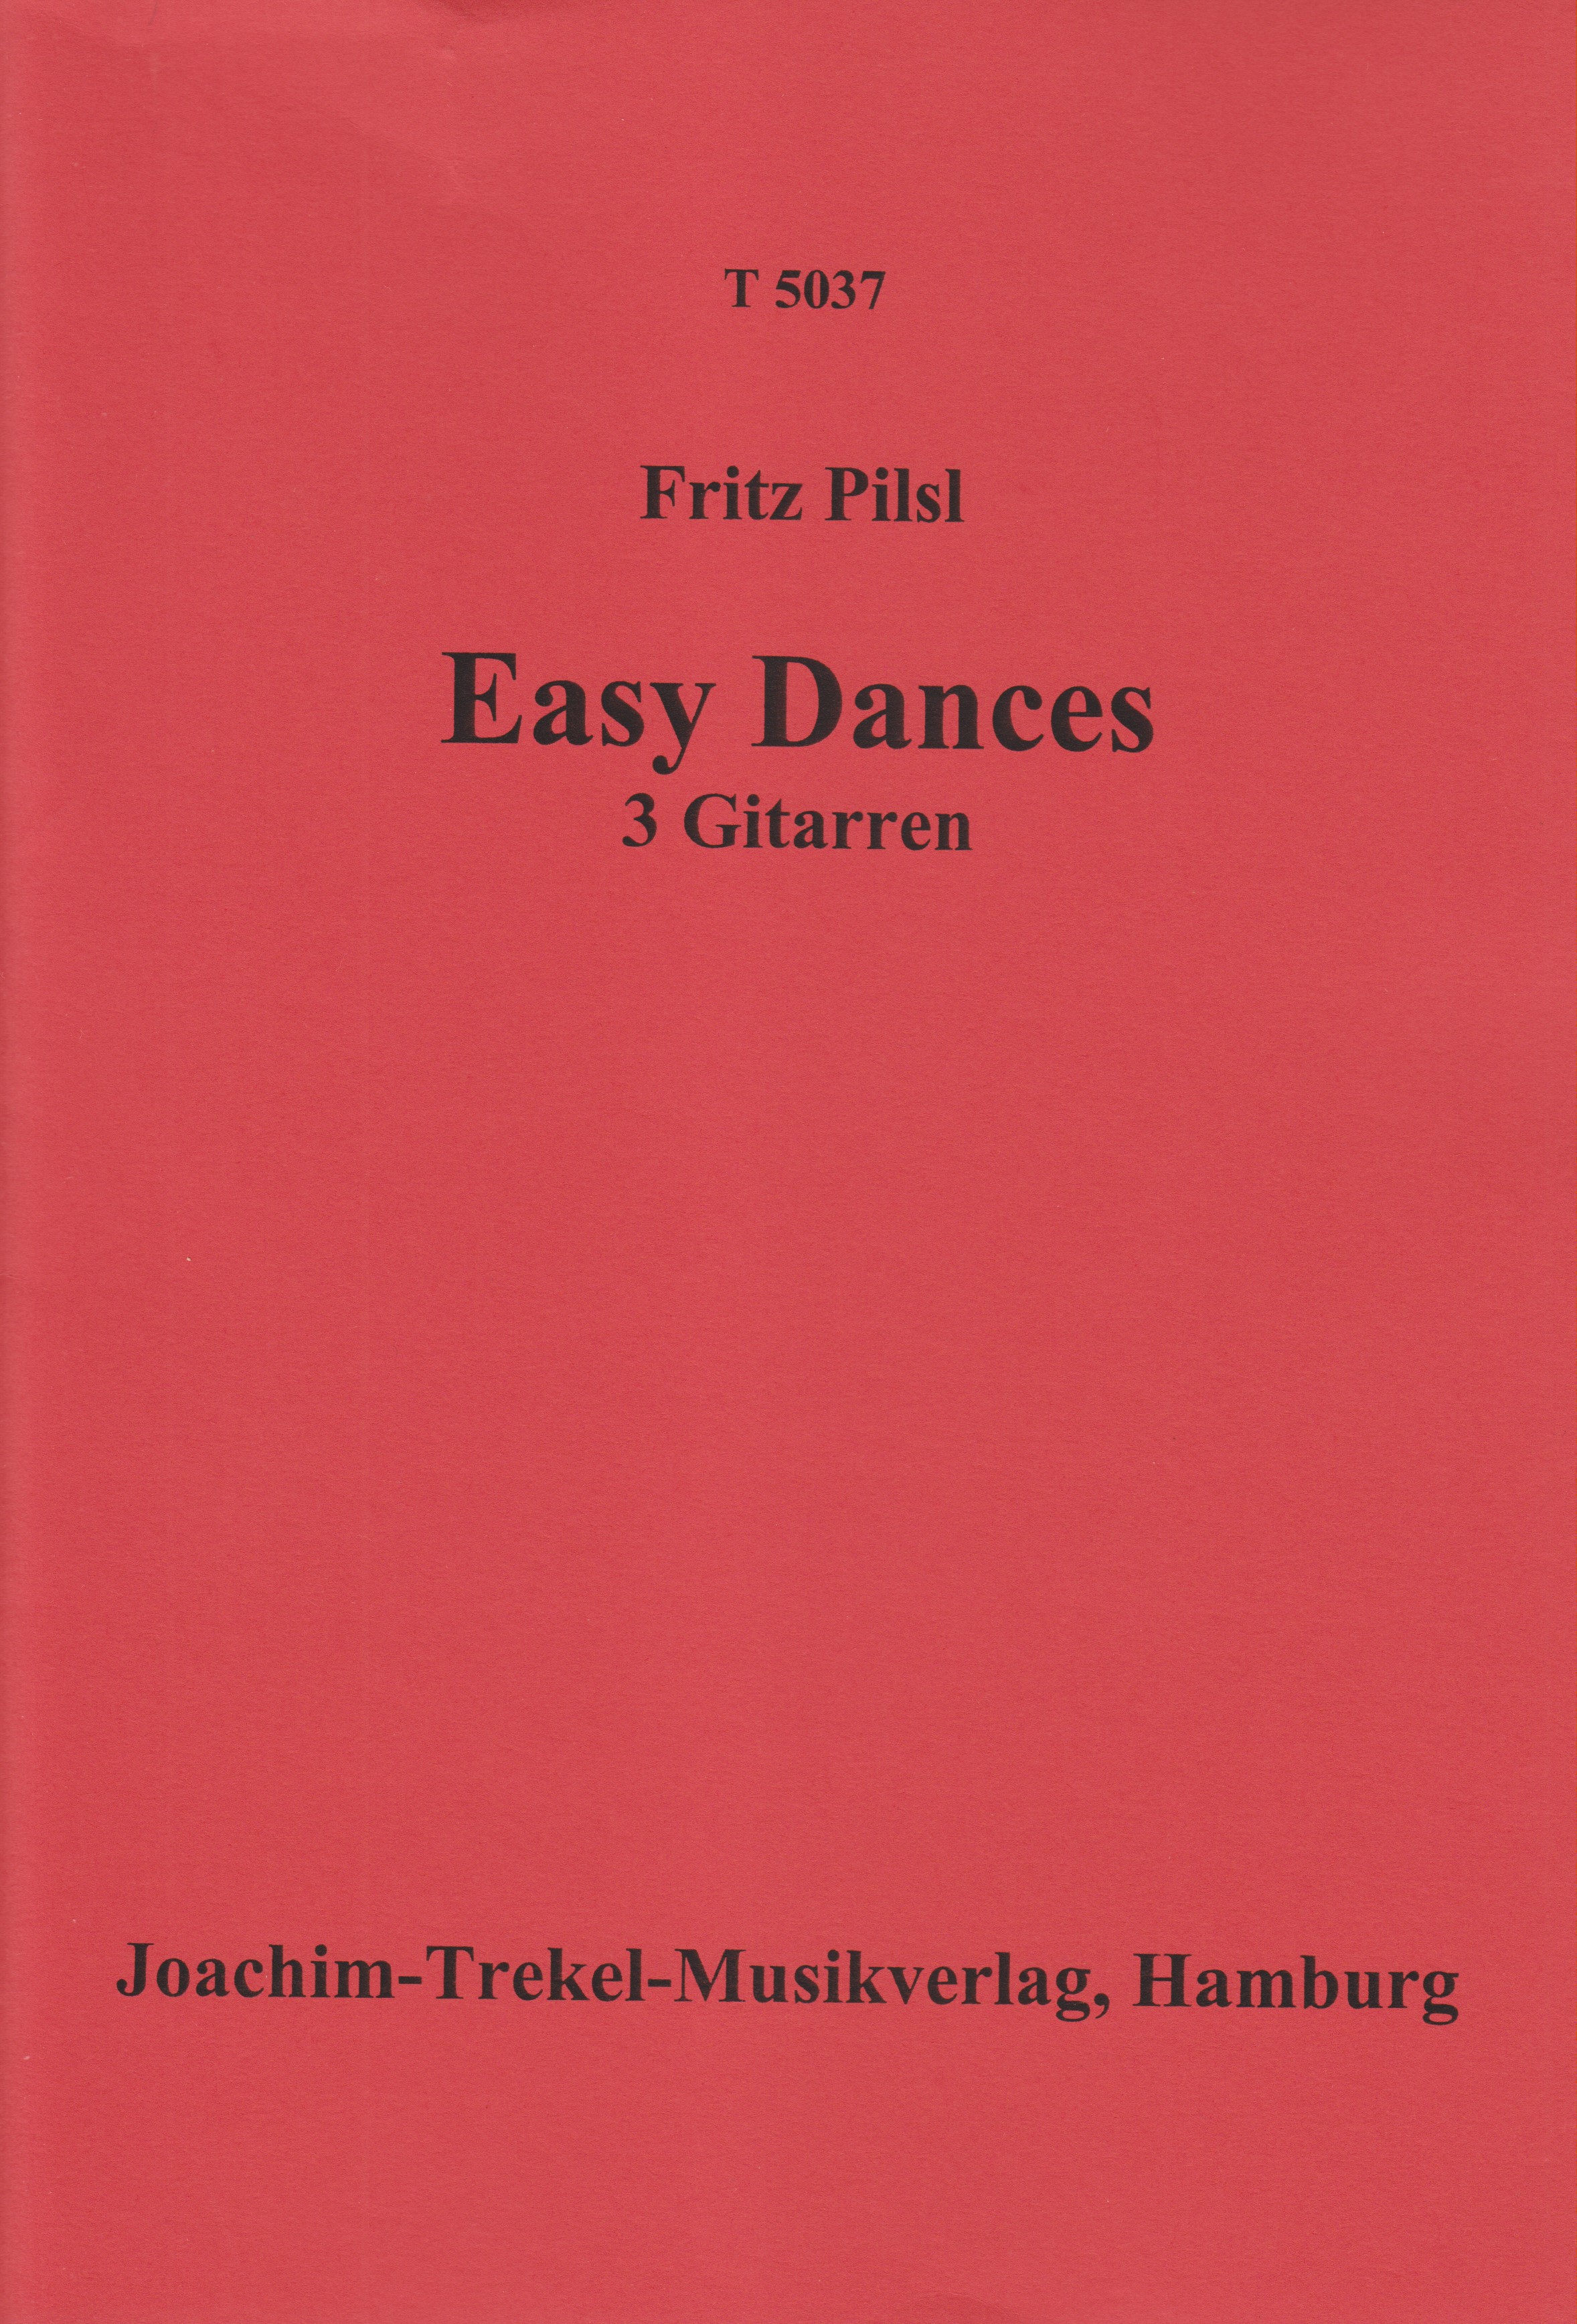 Easy Dances